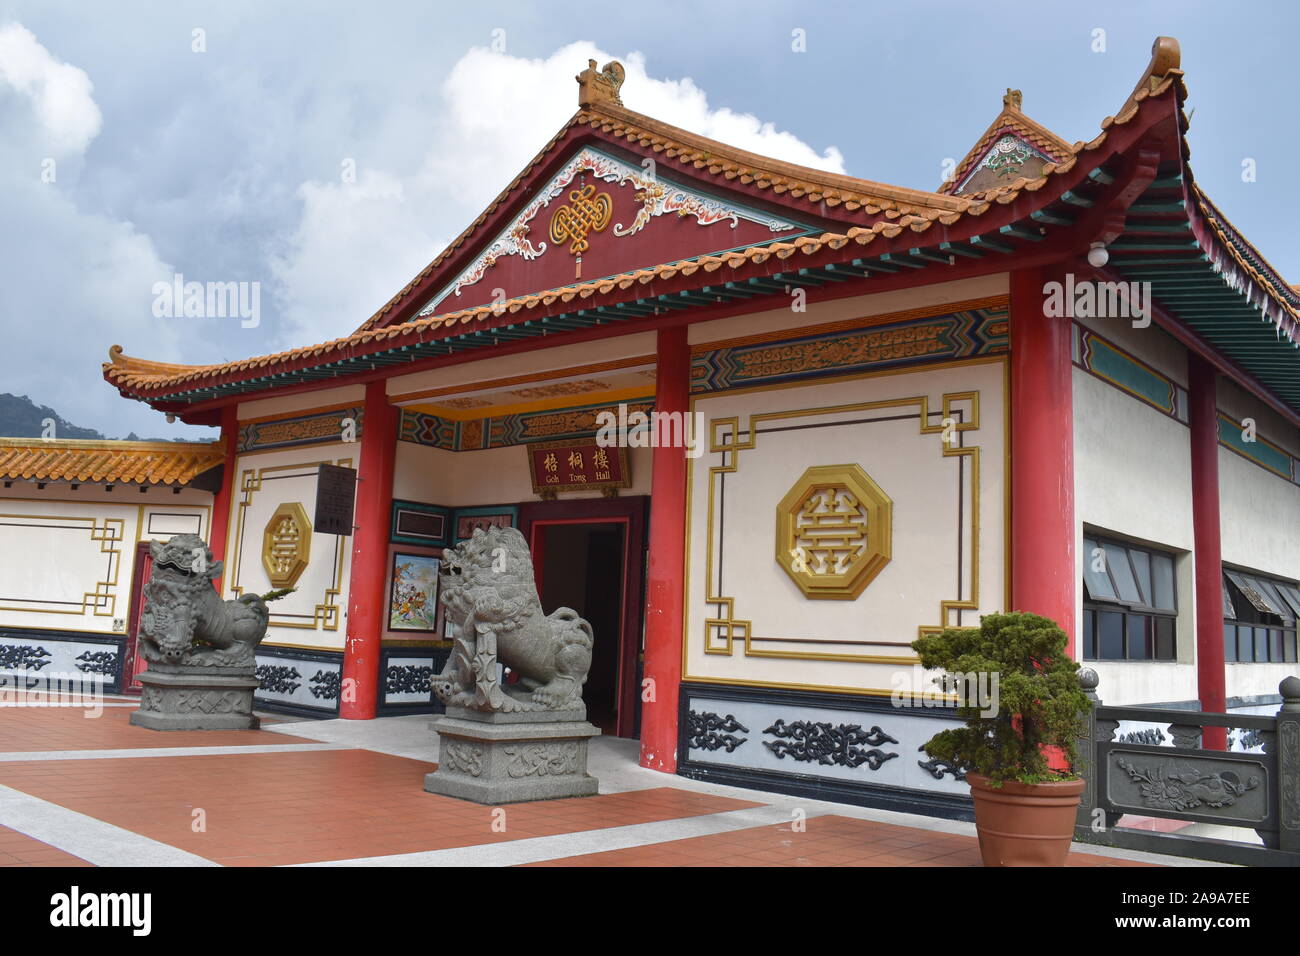 Chin Swee chinesische Tempel in rote und goldene Farbe mit zwei steinerne Statue des Löwen am Eingang mit einzigartiger Architektur in Genting Highlands, Malaysia Stockfoto